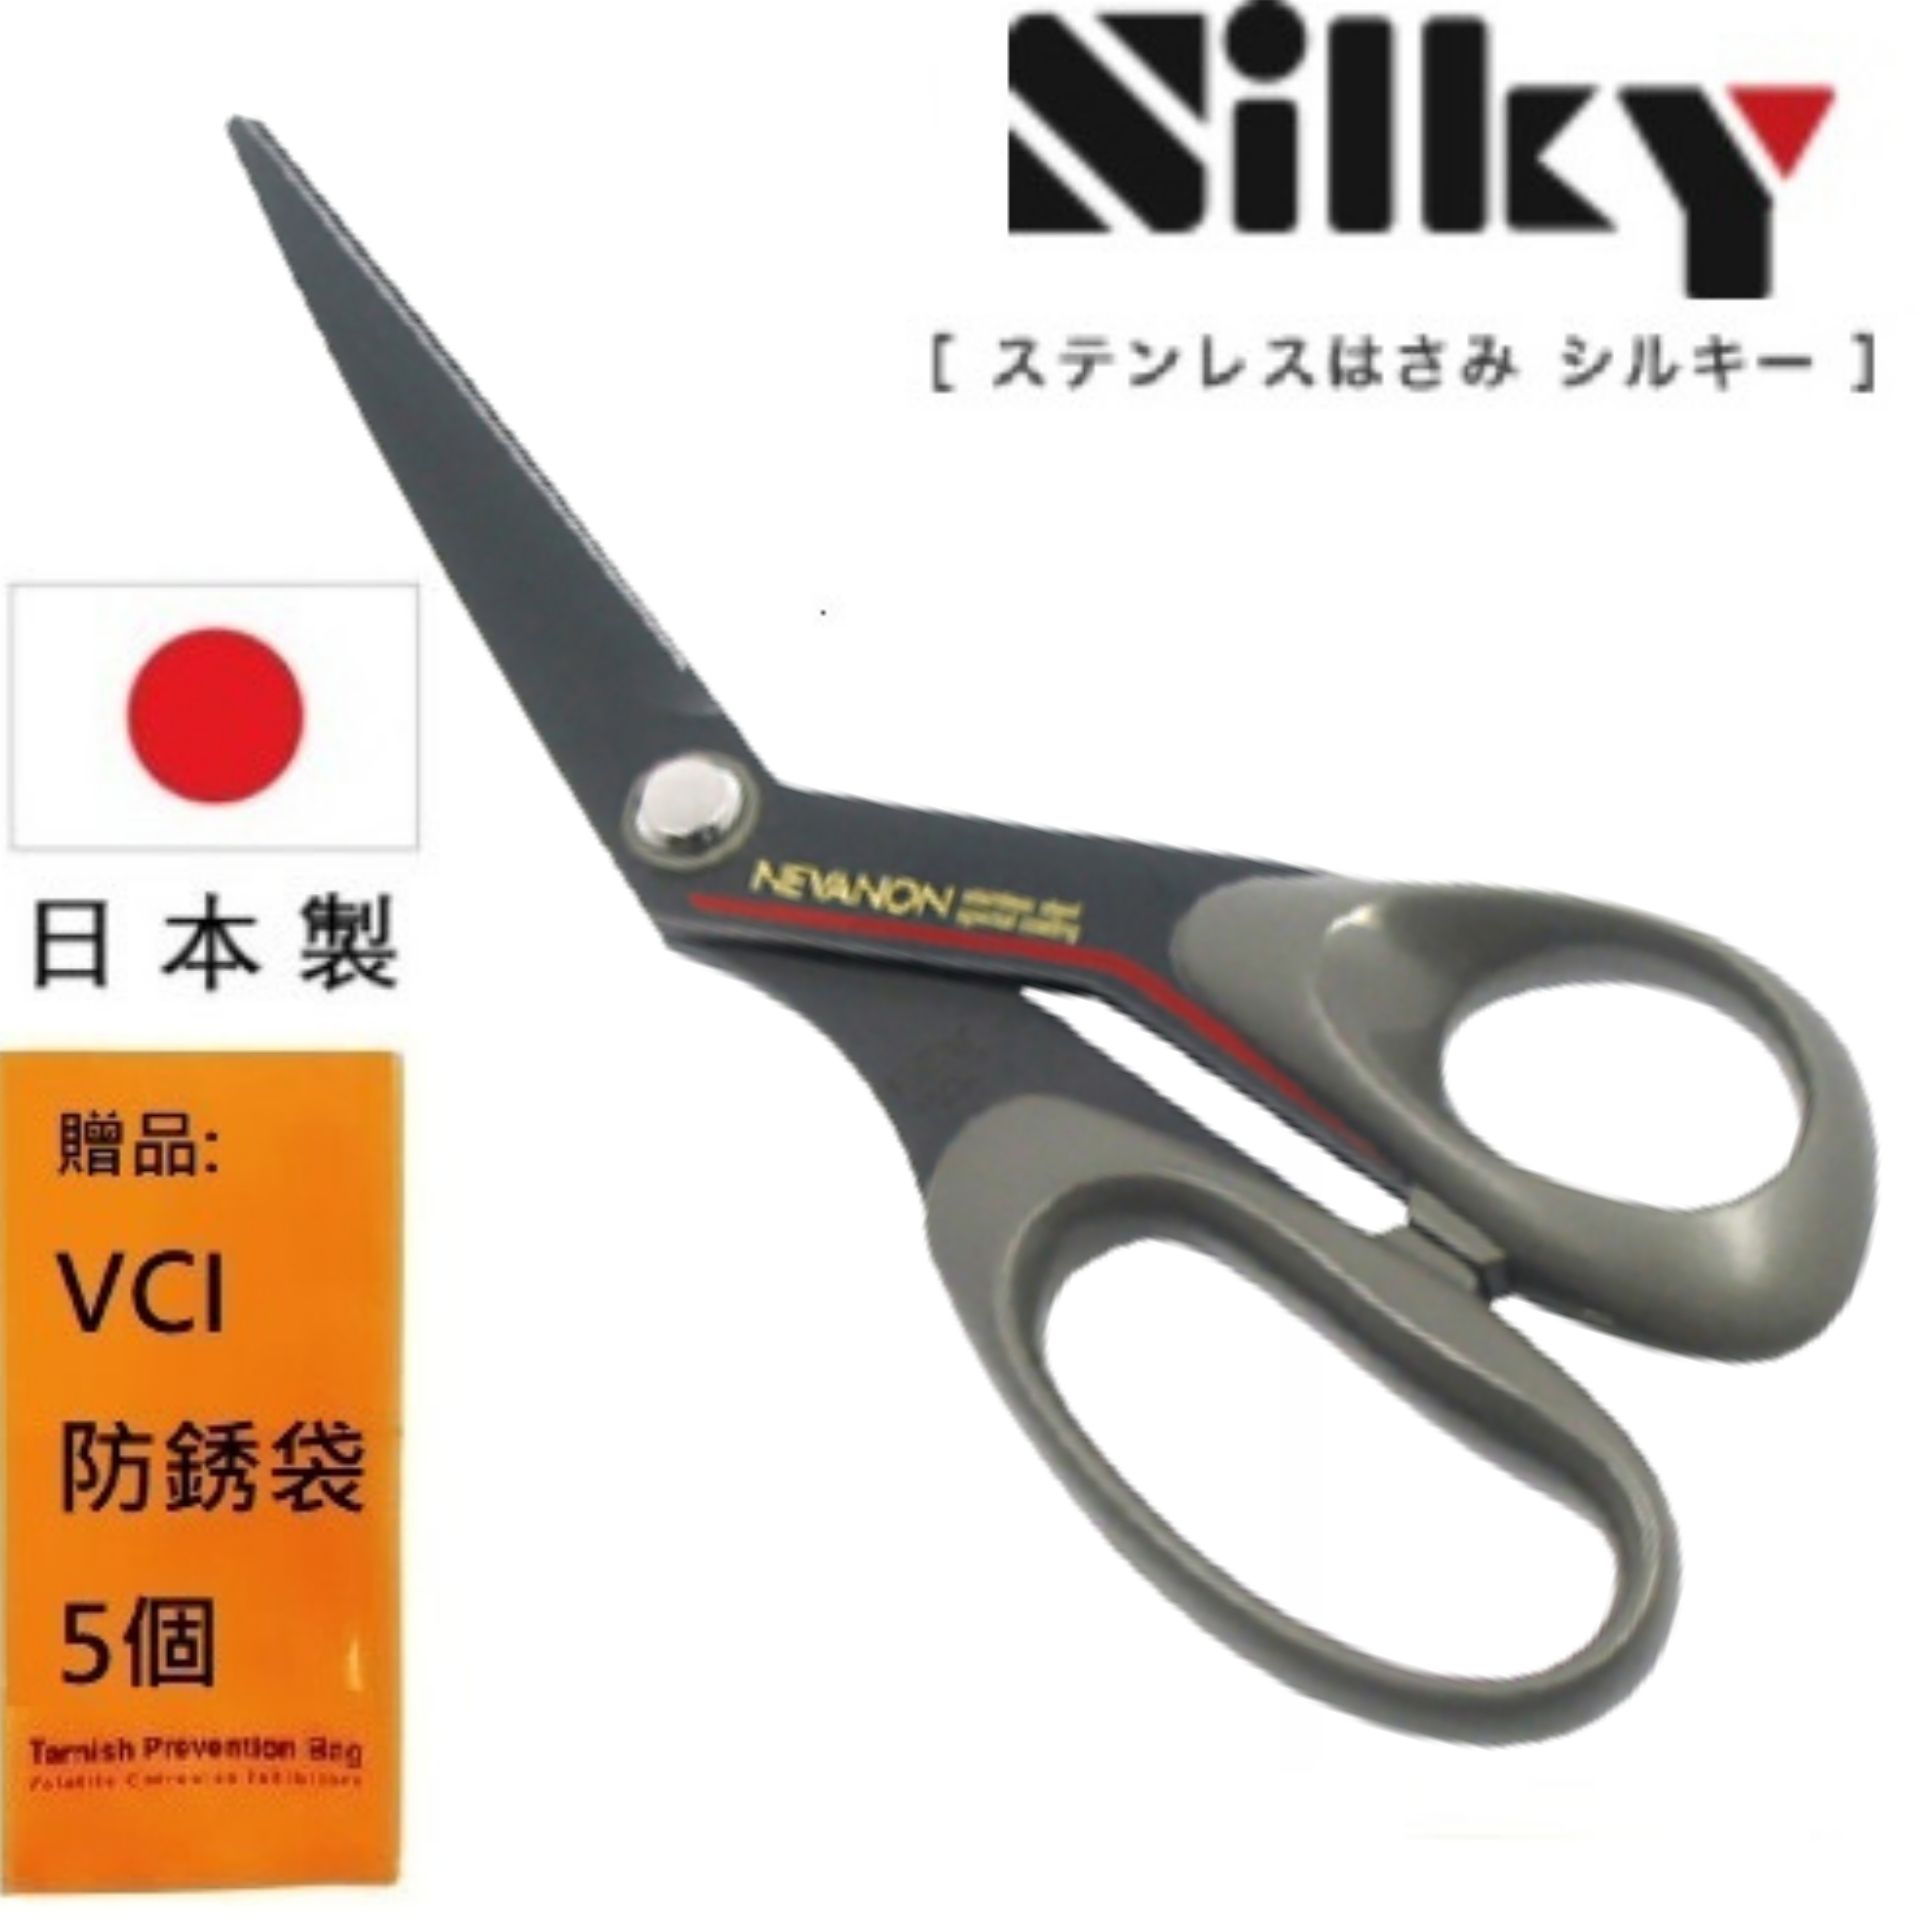 【日本SILKY】黑刃超不粘膠剪刀-斜刃-210mm 刃物鋼材質 品質保證 銳利、好剪